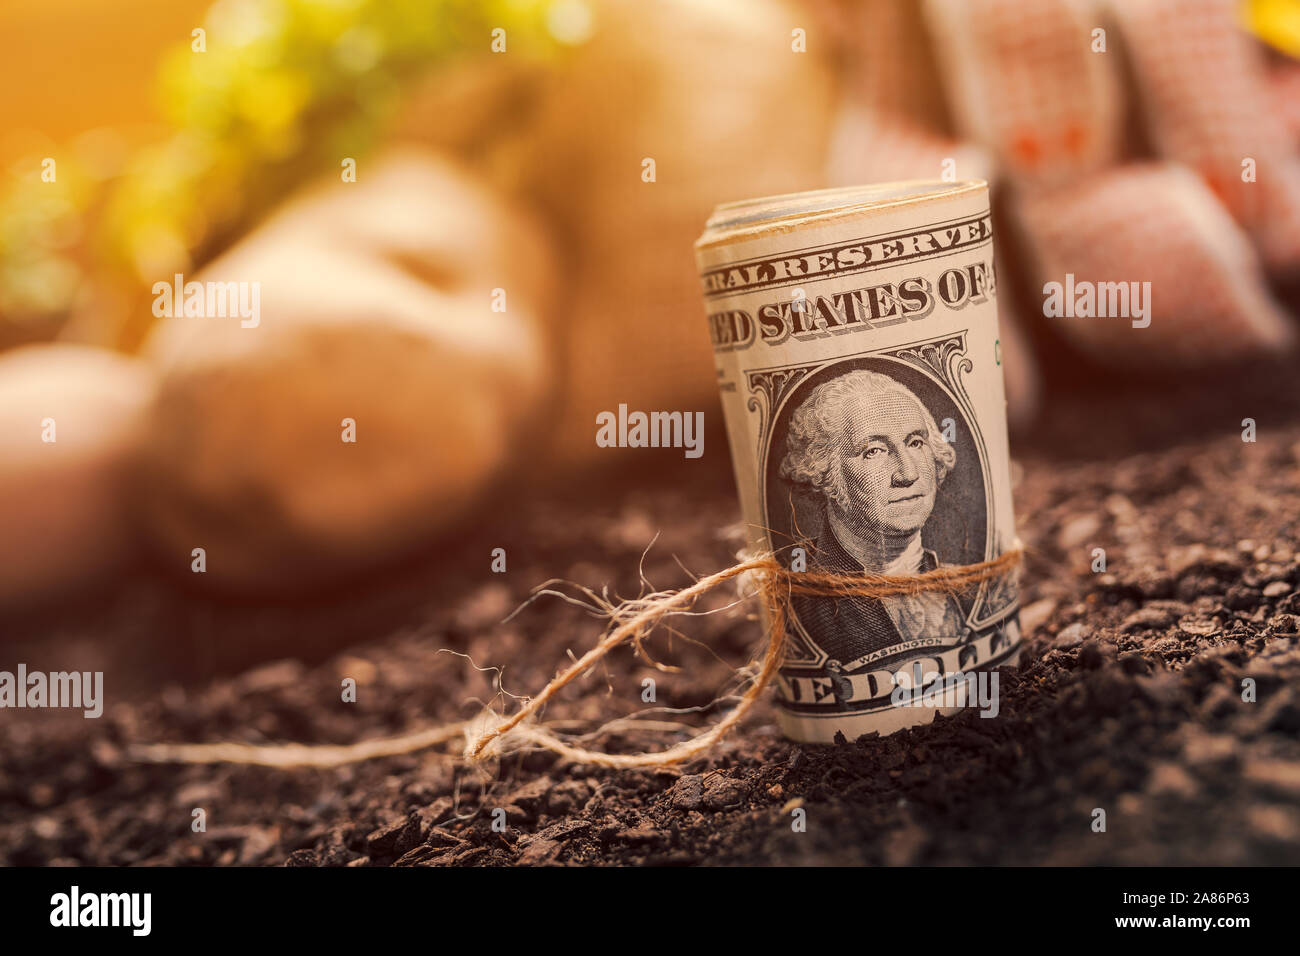 Gewinne aus biologischem Anbau der Kartoffel und Petersilie, Rolle von US-Dollar Banknoten auf gartenboden mit Kartoffel knolle und Petersilie Wurzel im Hintergrund Stockfoto